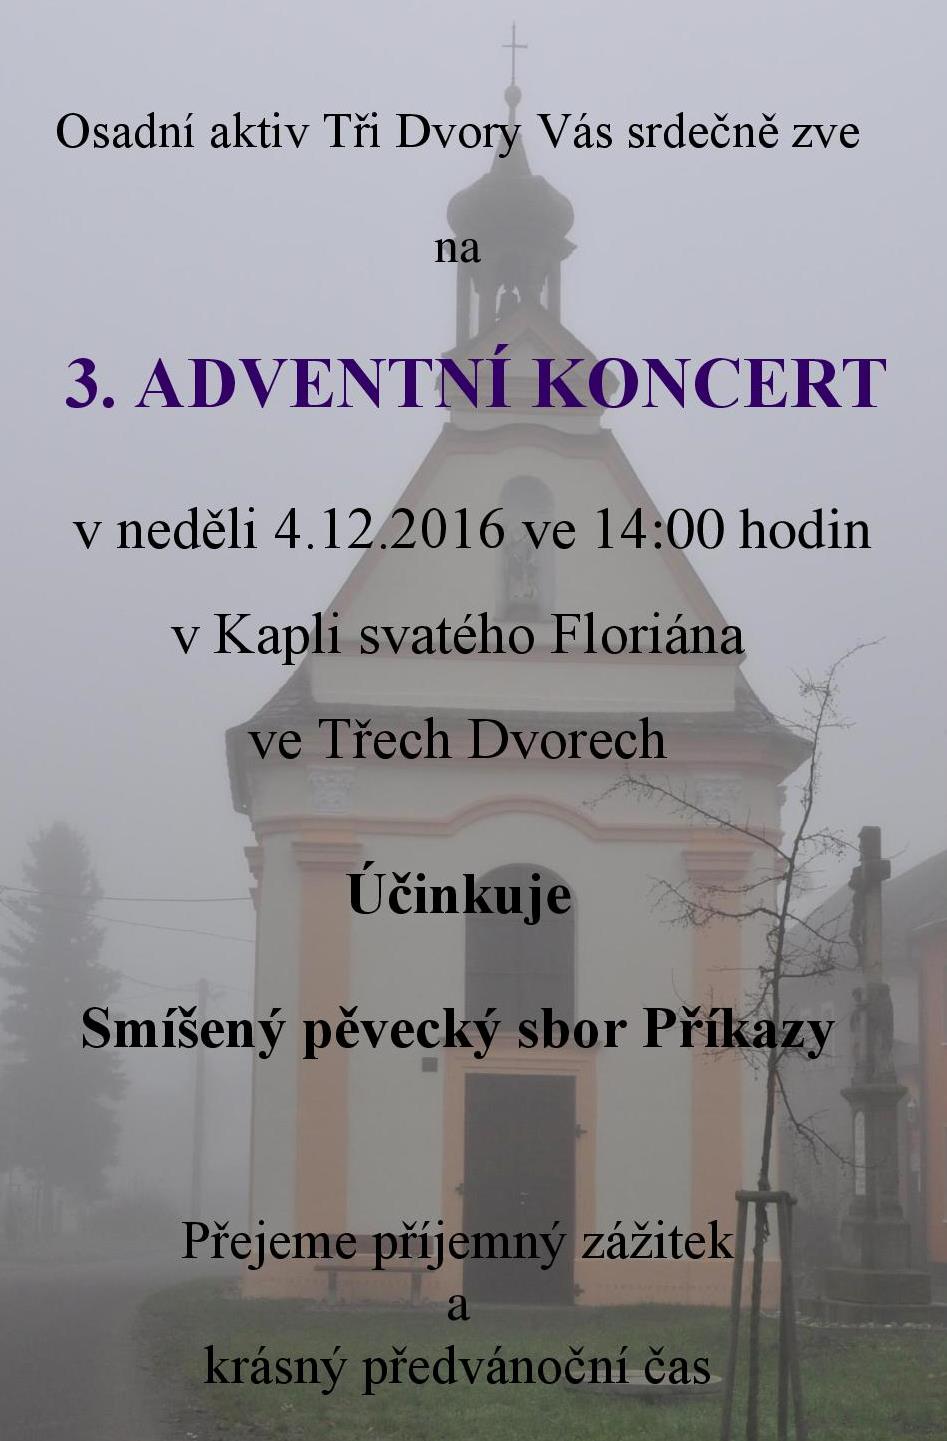 Pozvánka Adventní koncert 3Dvo-page-001.jpg